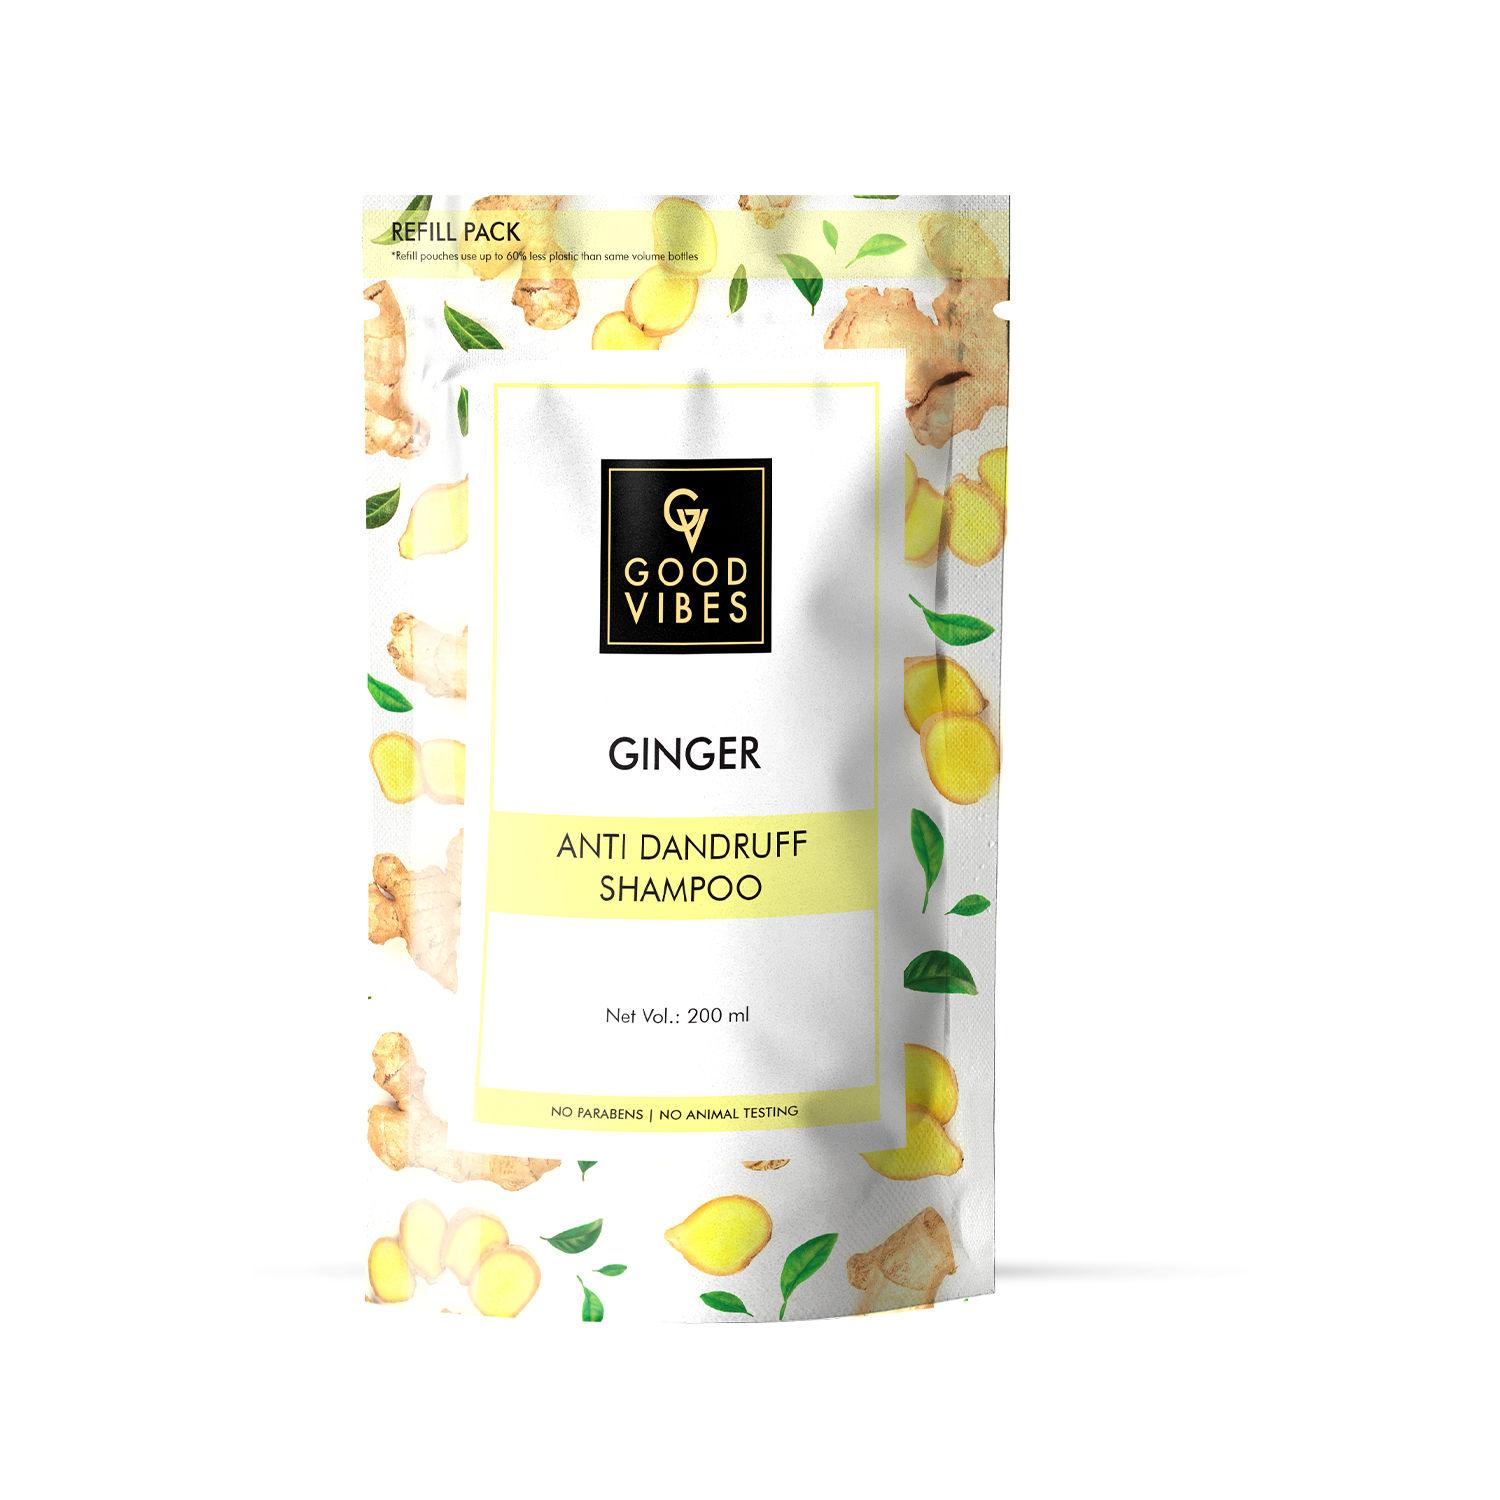 Buy Good Vibes Anti Dandruff Shampoo - Ginger 200 ml refill pack - Purplle